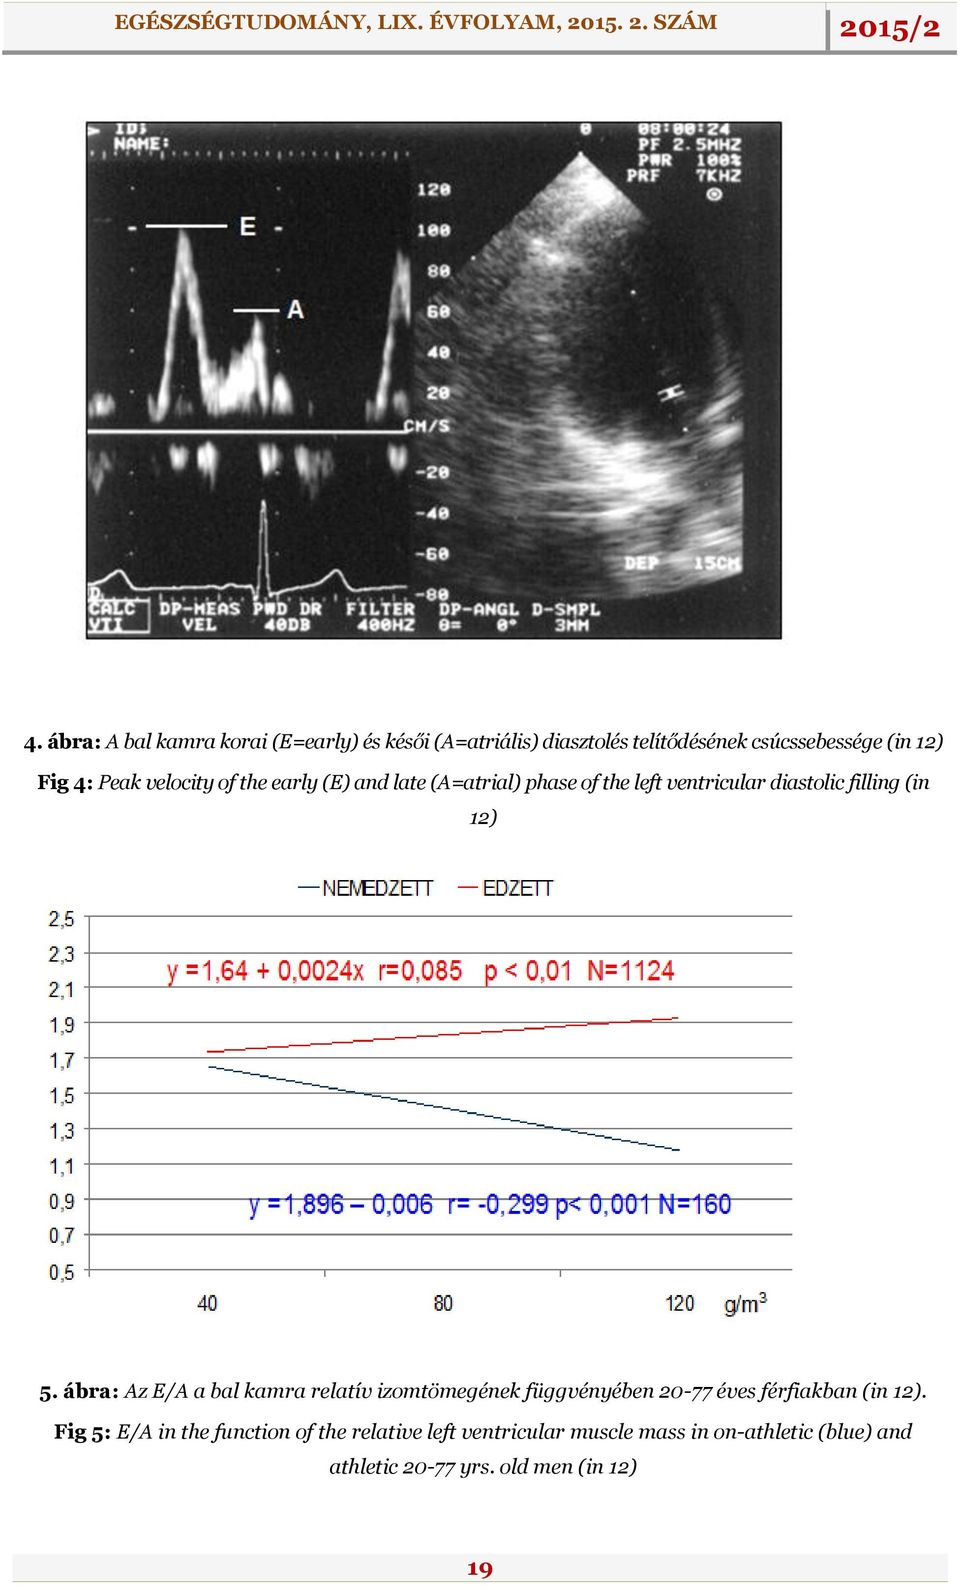 ábra: Az E/A a bal kamra relatív izomtömegének függvényében 20-77 éves férfiakban (in 12).